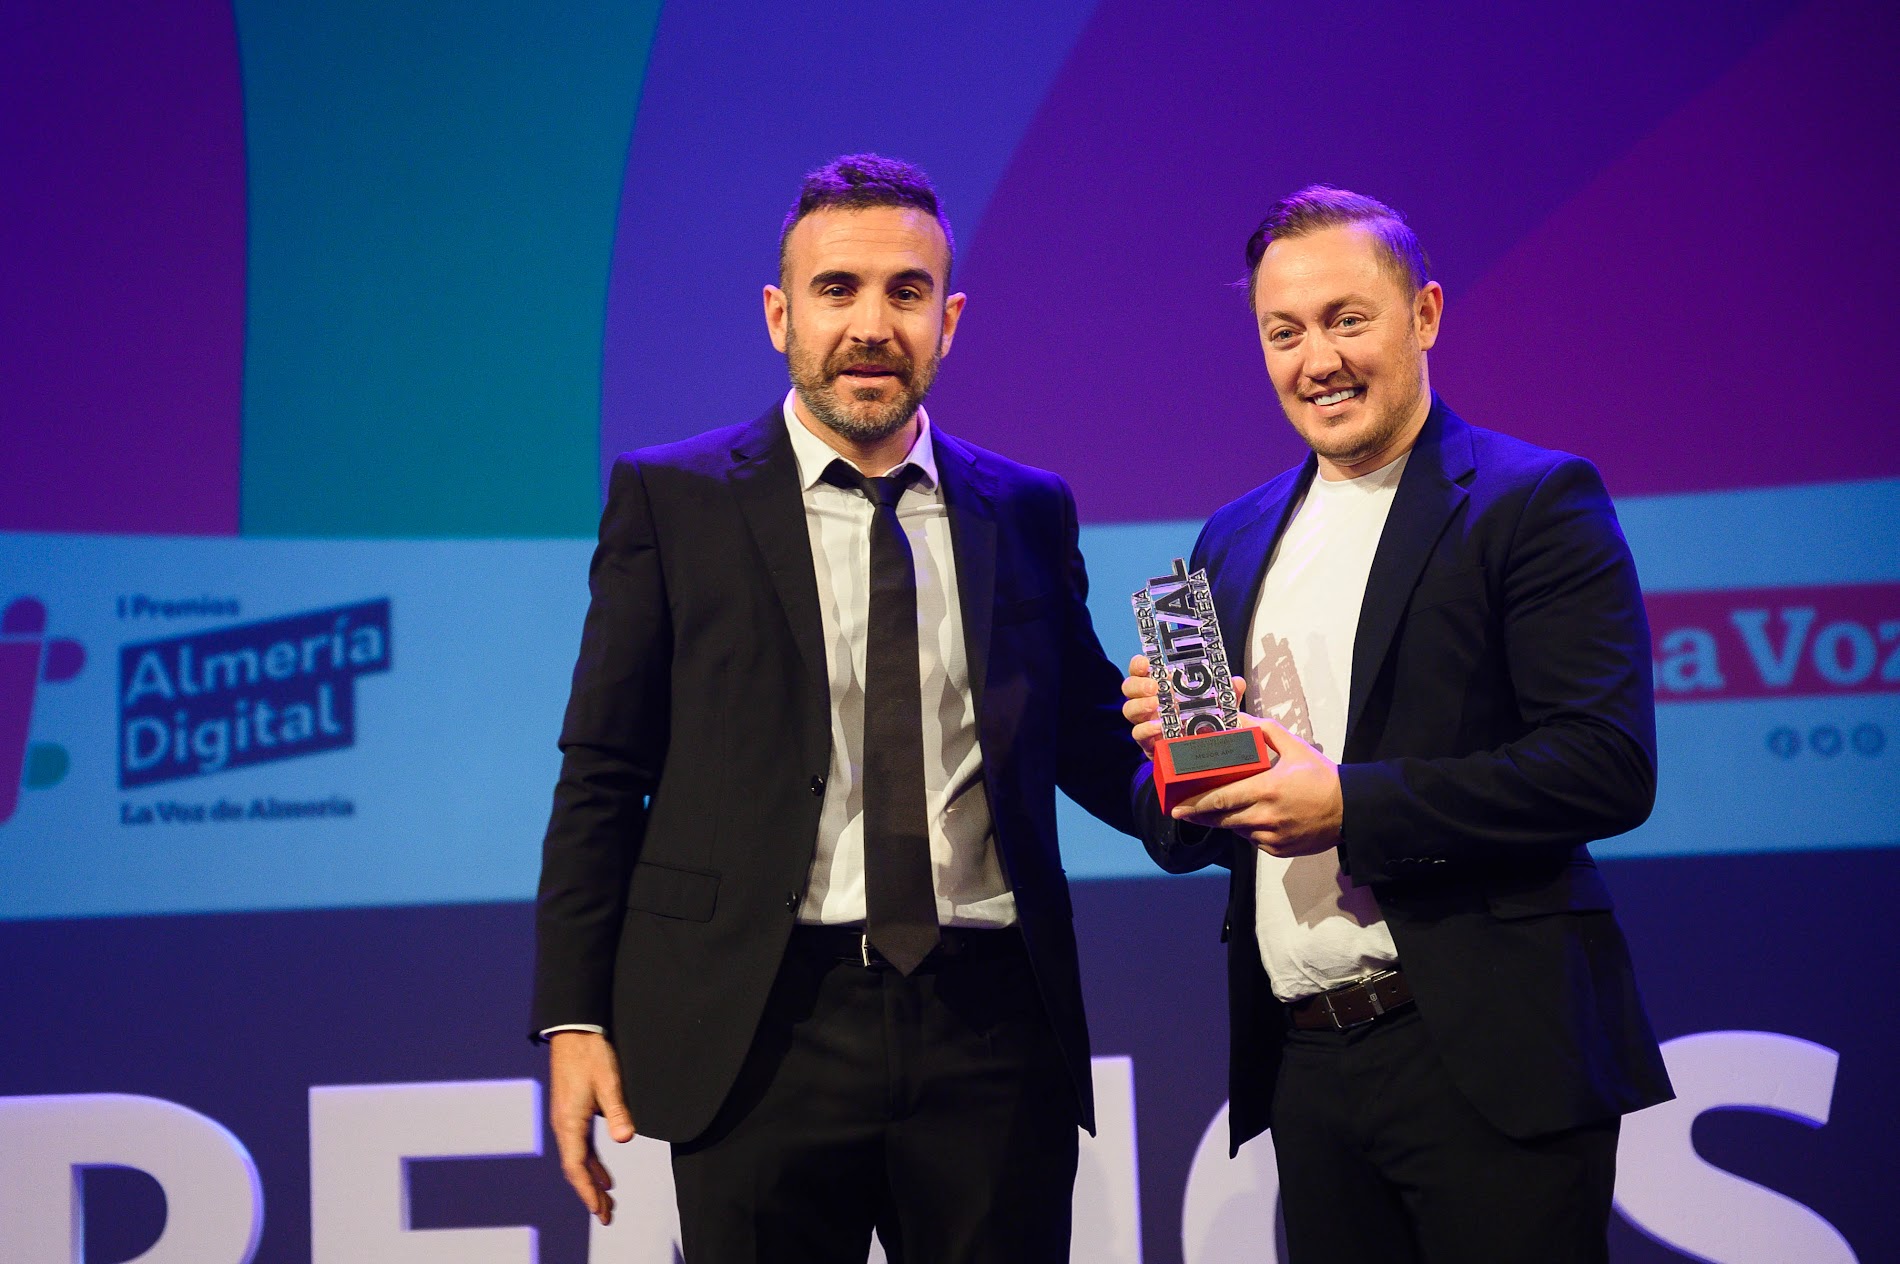 Trainingym recibe el premio a mejor aplicación móvil en los Premios Almería Digital